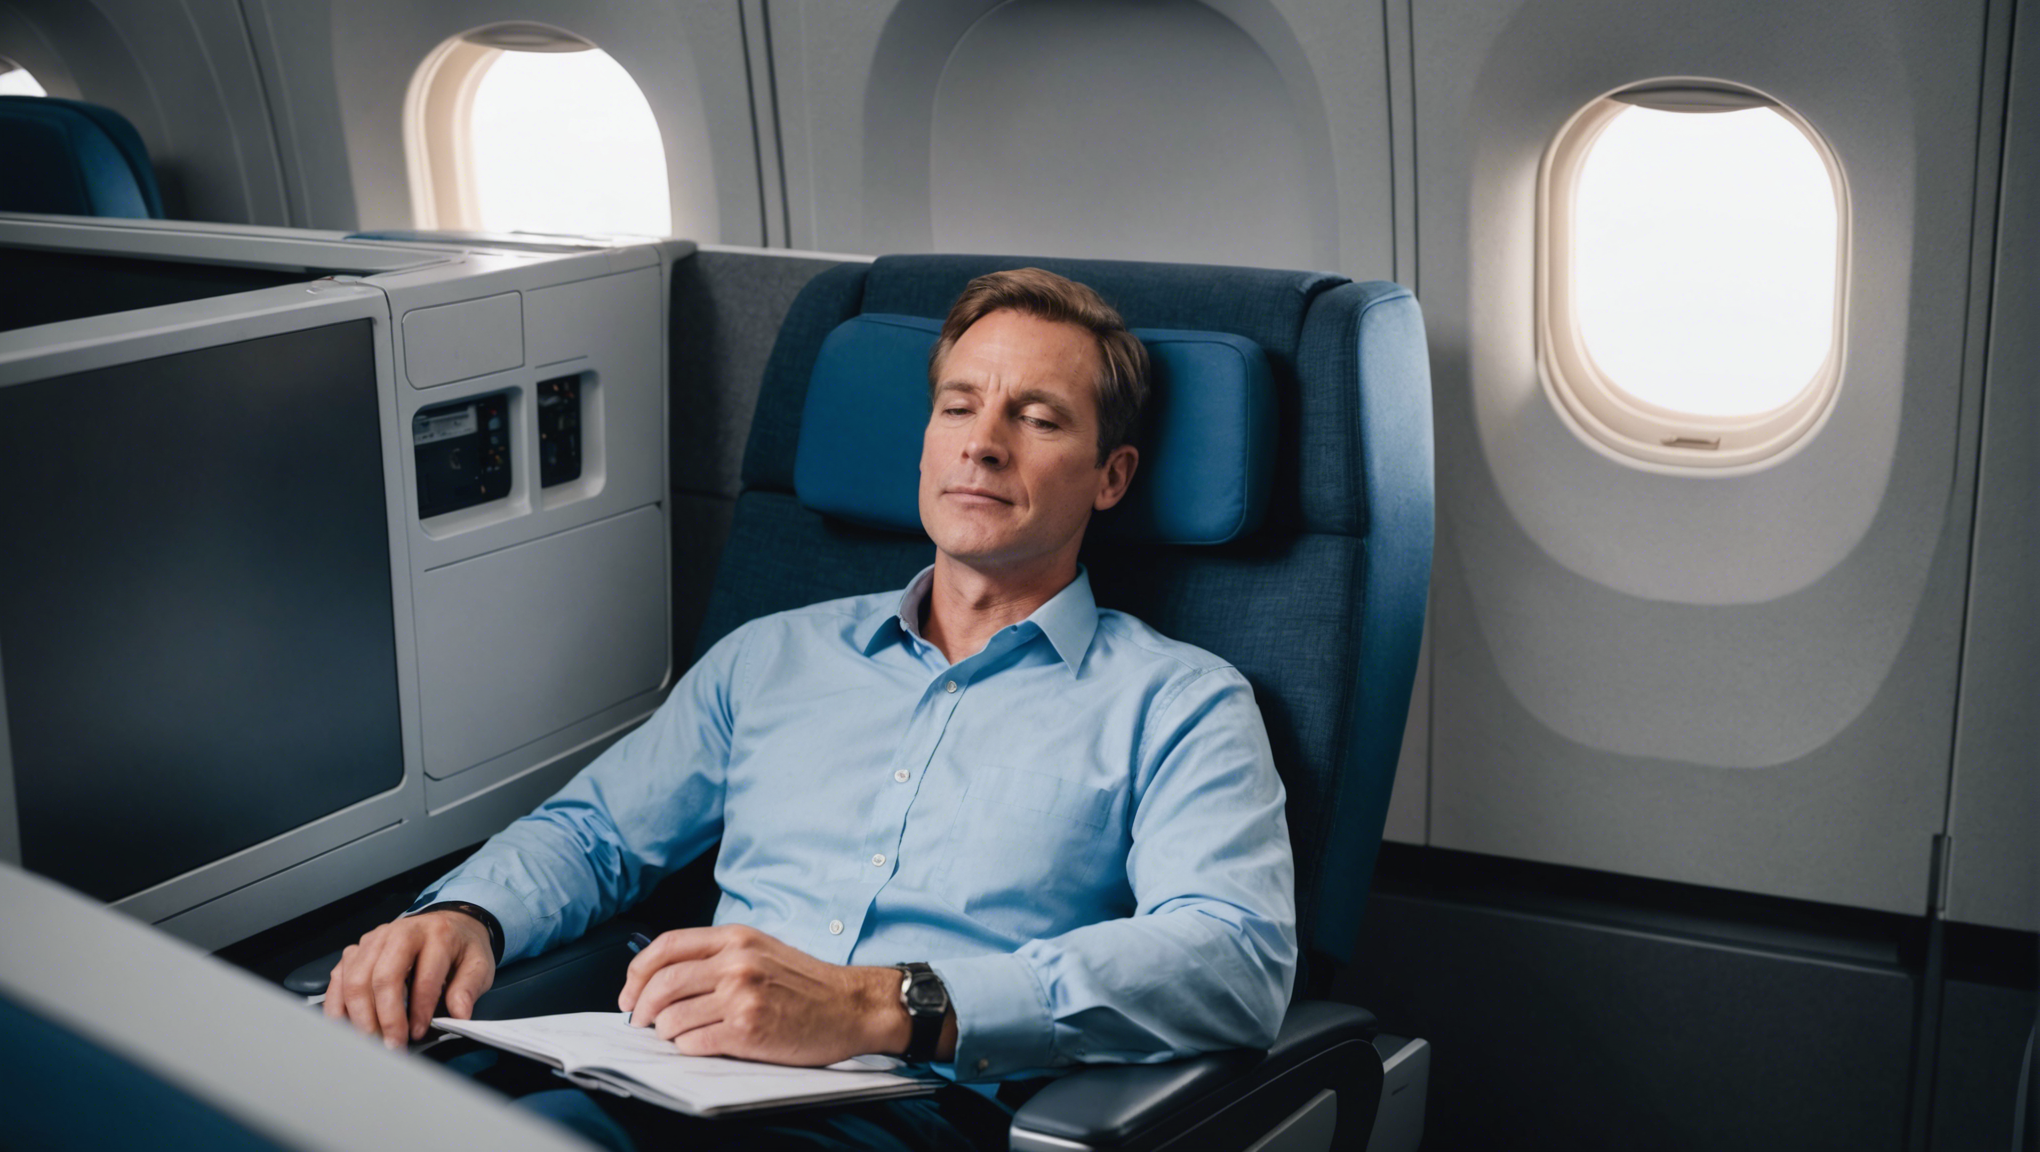 découvrez comment bien se reposer et dormir pendant un vol grâce à nos conseils pratiques pour un voyage en toute sérénité.